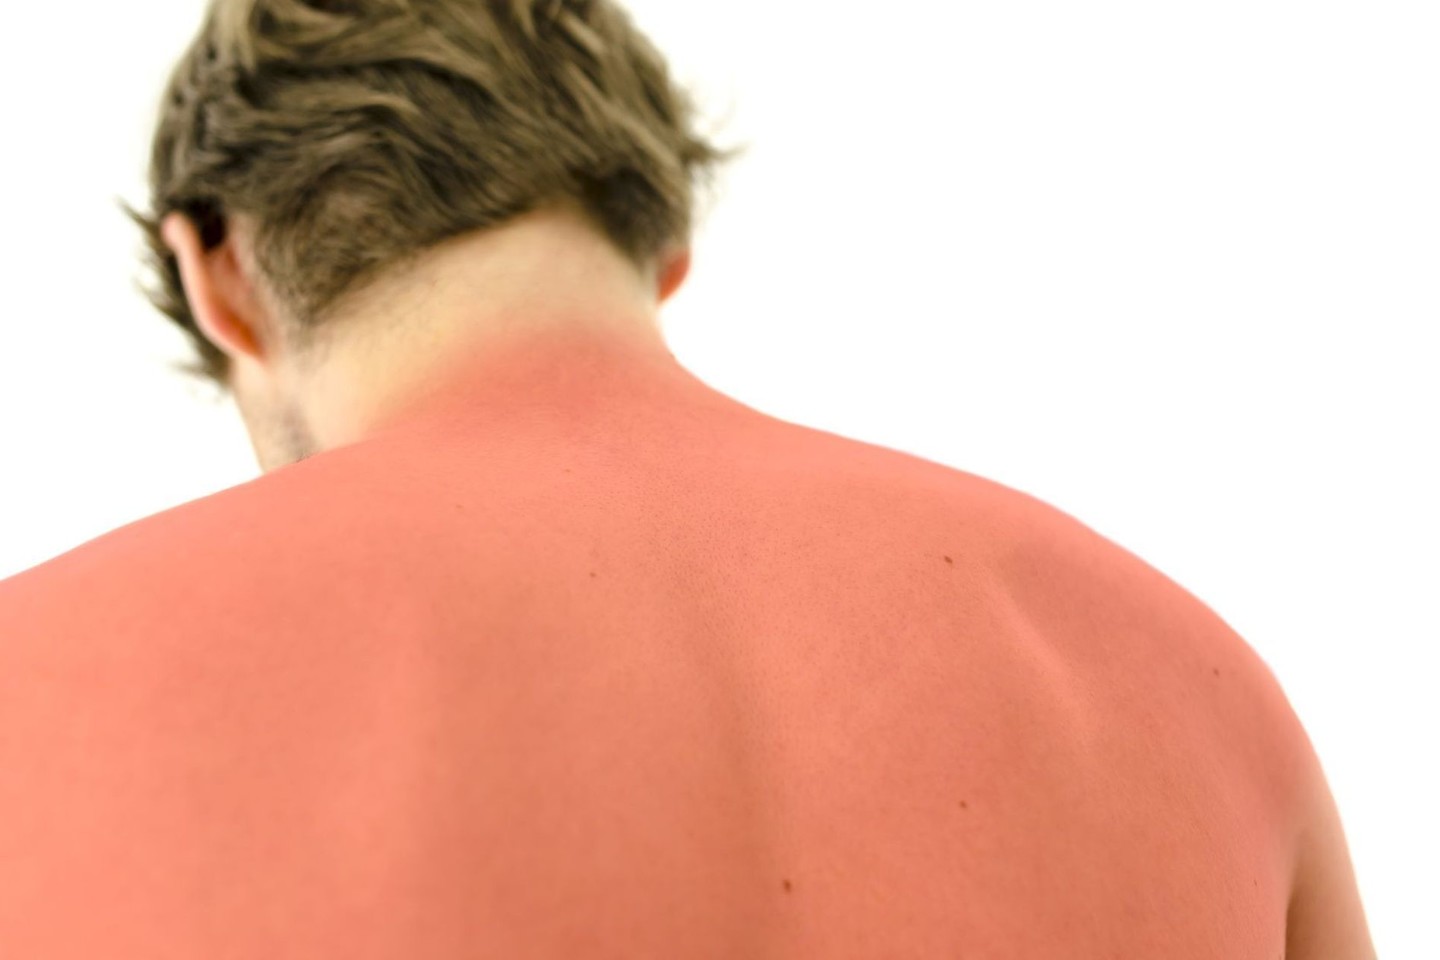 Sveikatos priežiūros specialistai pabrėžia, jog saulė spinduliuoja įvairaus ilgio ultravioletinius (UV) spindulius. Odos nudegimus sukelia ultravioletiniai B spektro saulės spinduliai (UVB), o ultravioletiniai A spektro saulės spinduliai (UVA) siejami su ankstyvuoju odos senėjimu bei žmogaus imuninės sistemos nusilpimu. Abi spinduliuotės rūšys didina odos vėžio išsivystymo riziką ir gali sukelti įvairias akių ligas.<br>123rf nuotr.